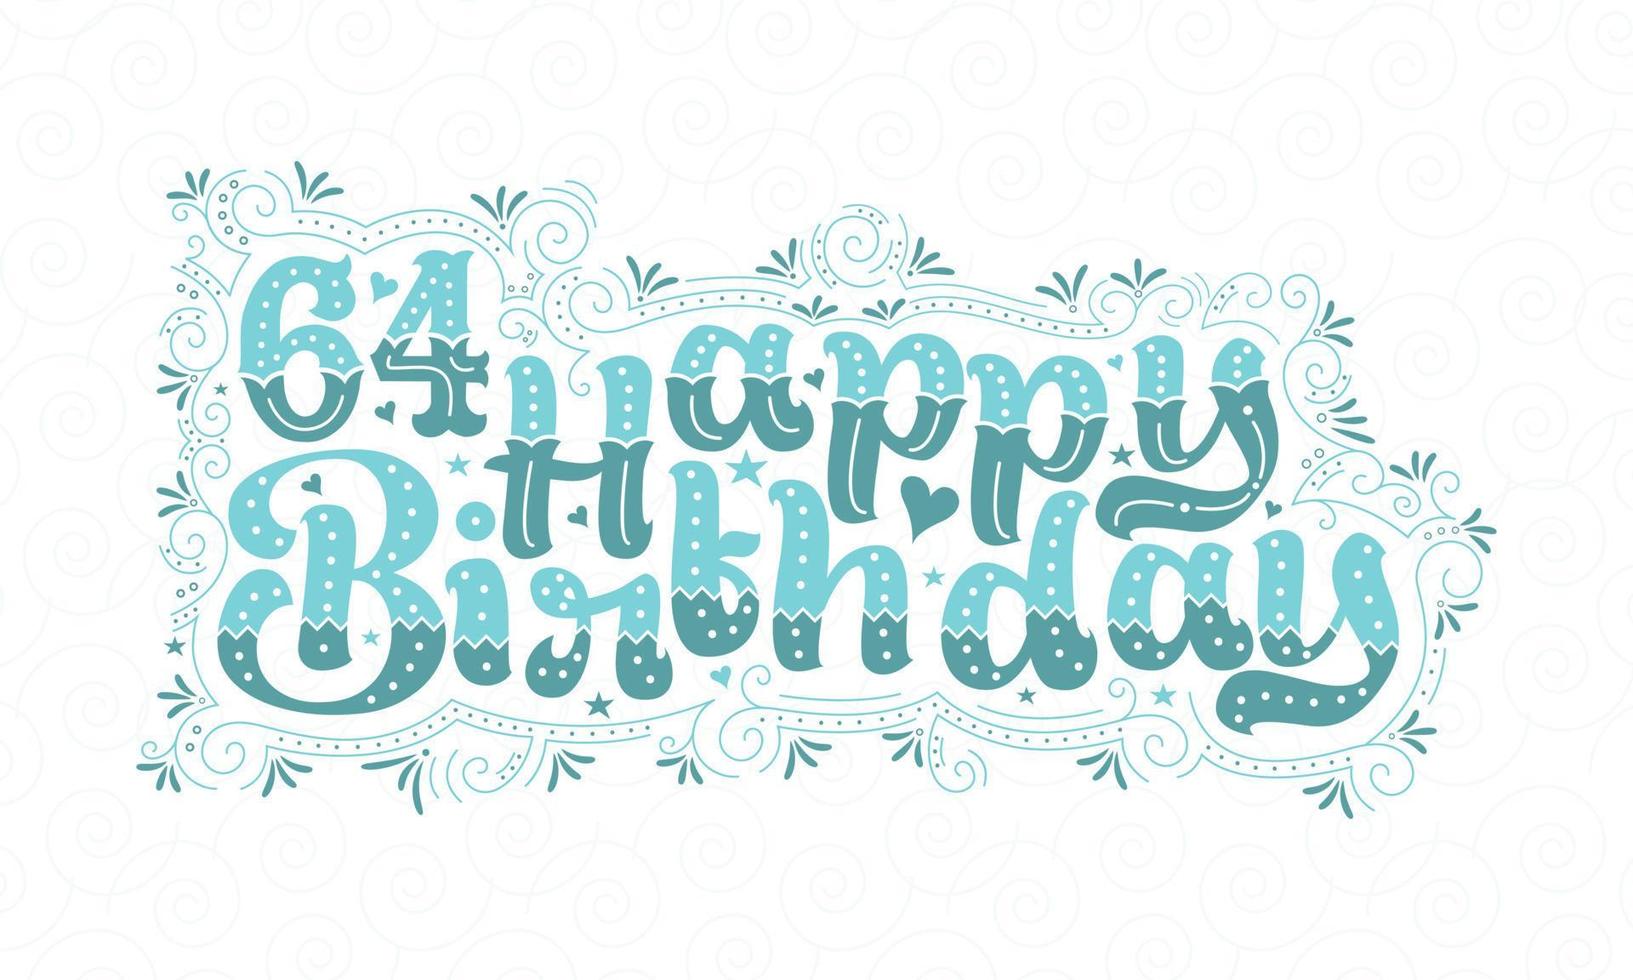 64:e Grattis på födelsedagen bokstäver, 64 års födelsedag vacker typografidesign med aqua prickar, linjer och löv. vektor